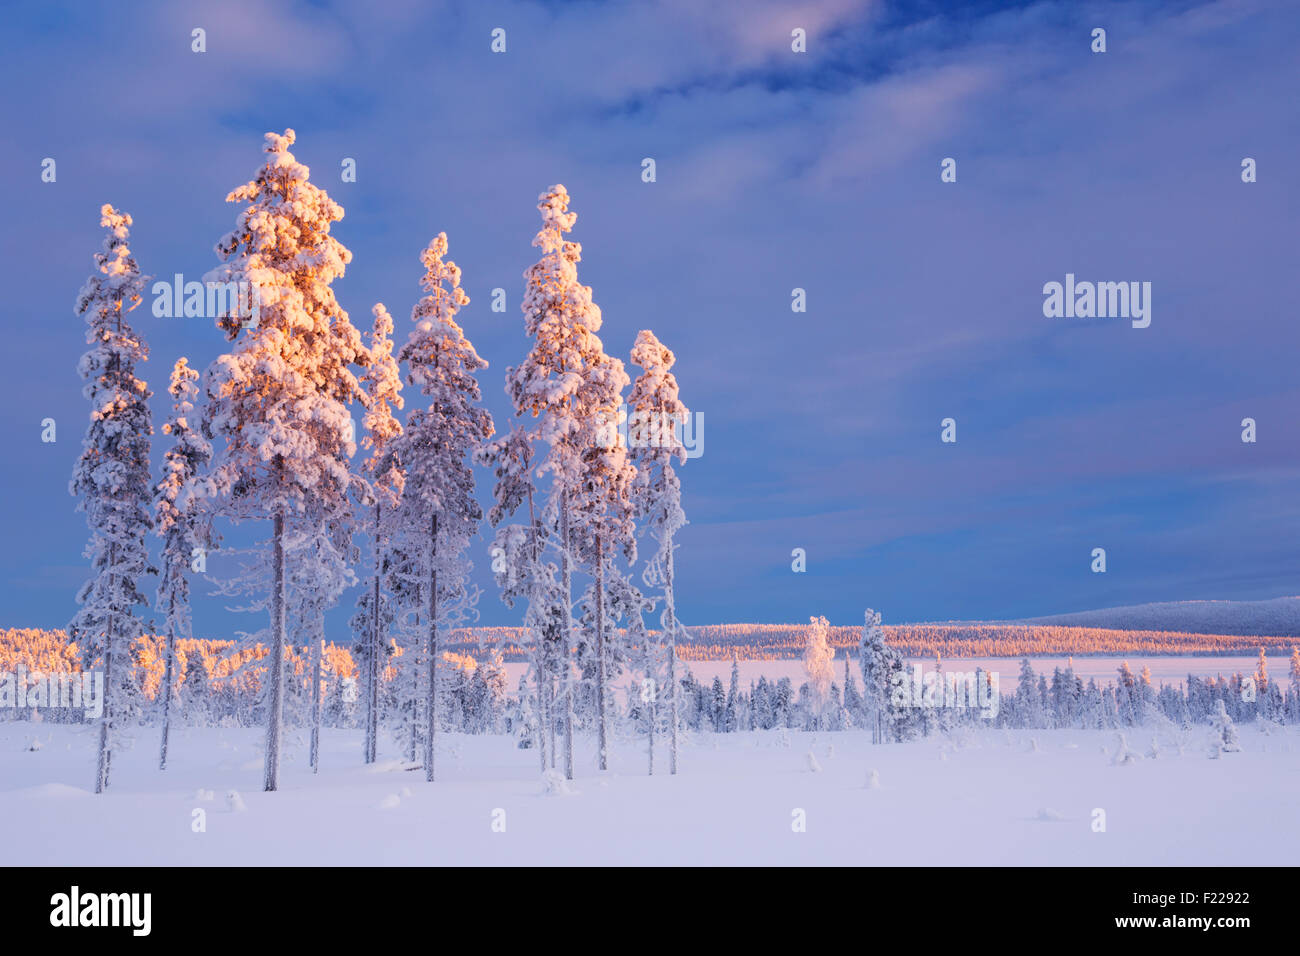 Paysage d'hiver en Laponie Finlandaise, photographié au coucher du soleil. Banque D'Images